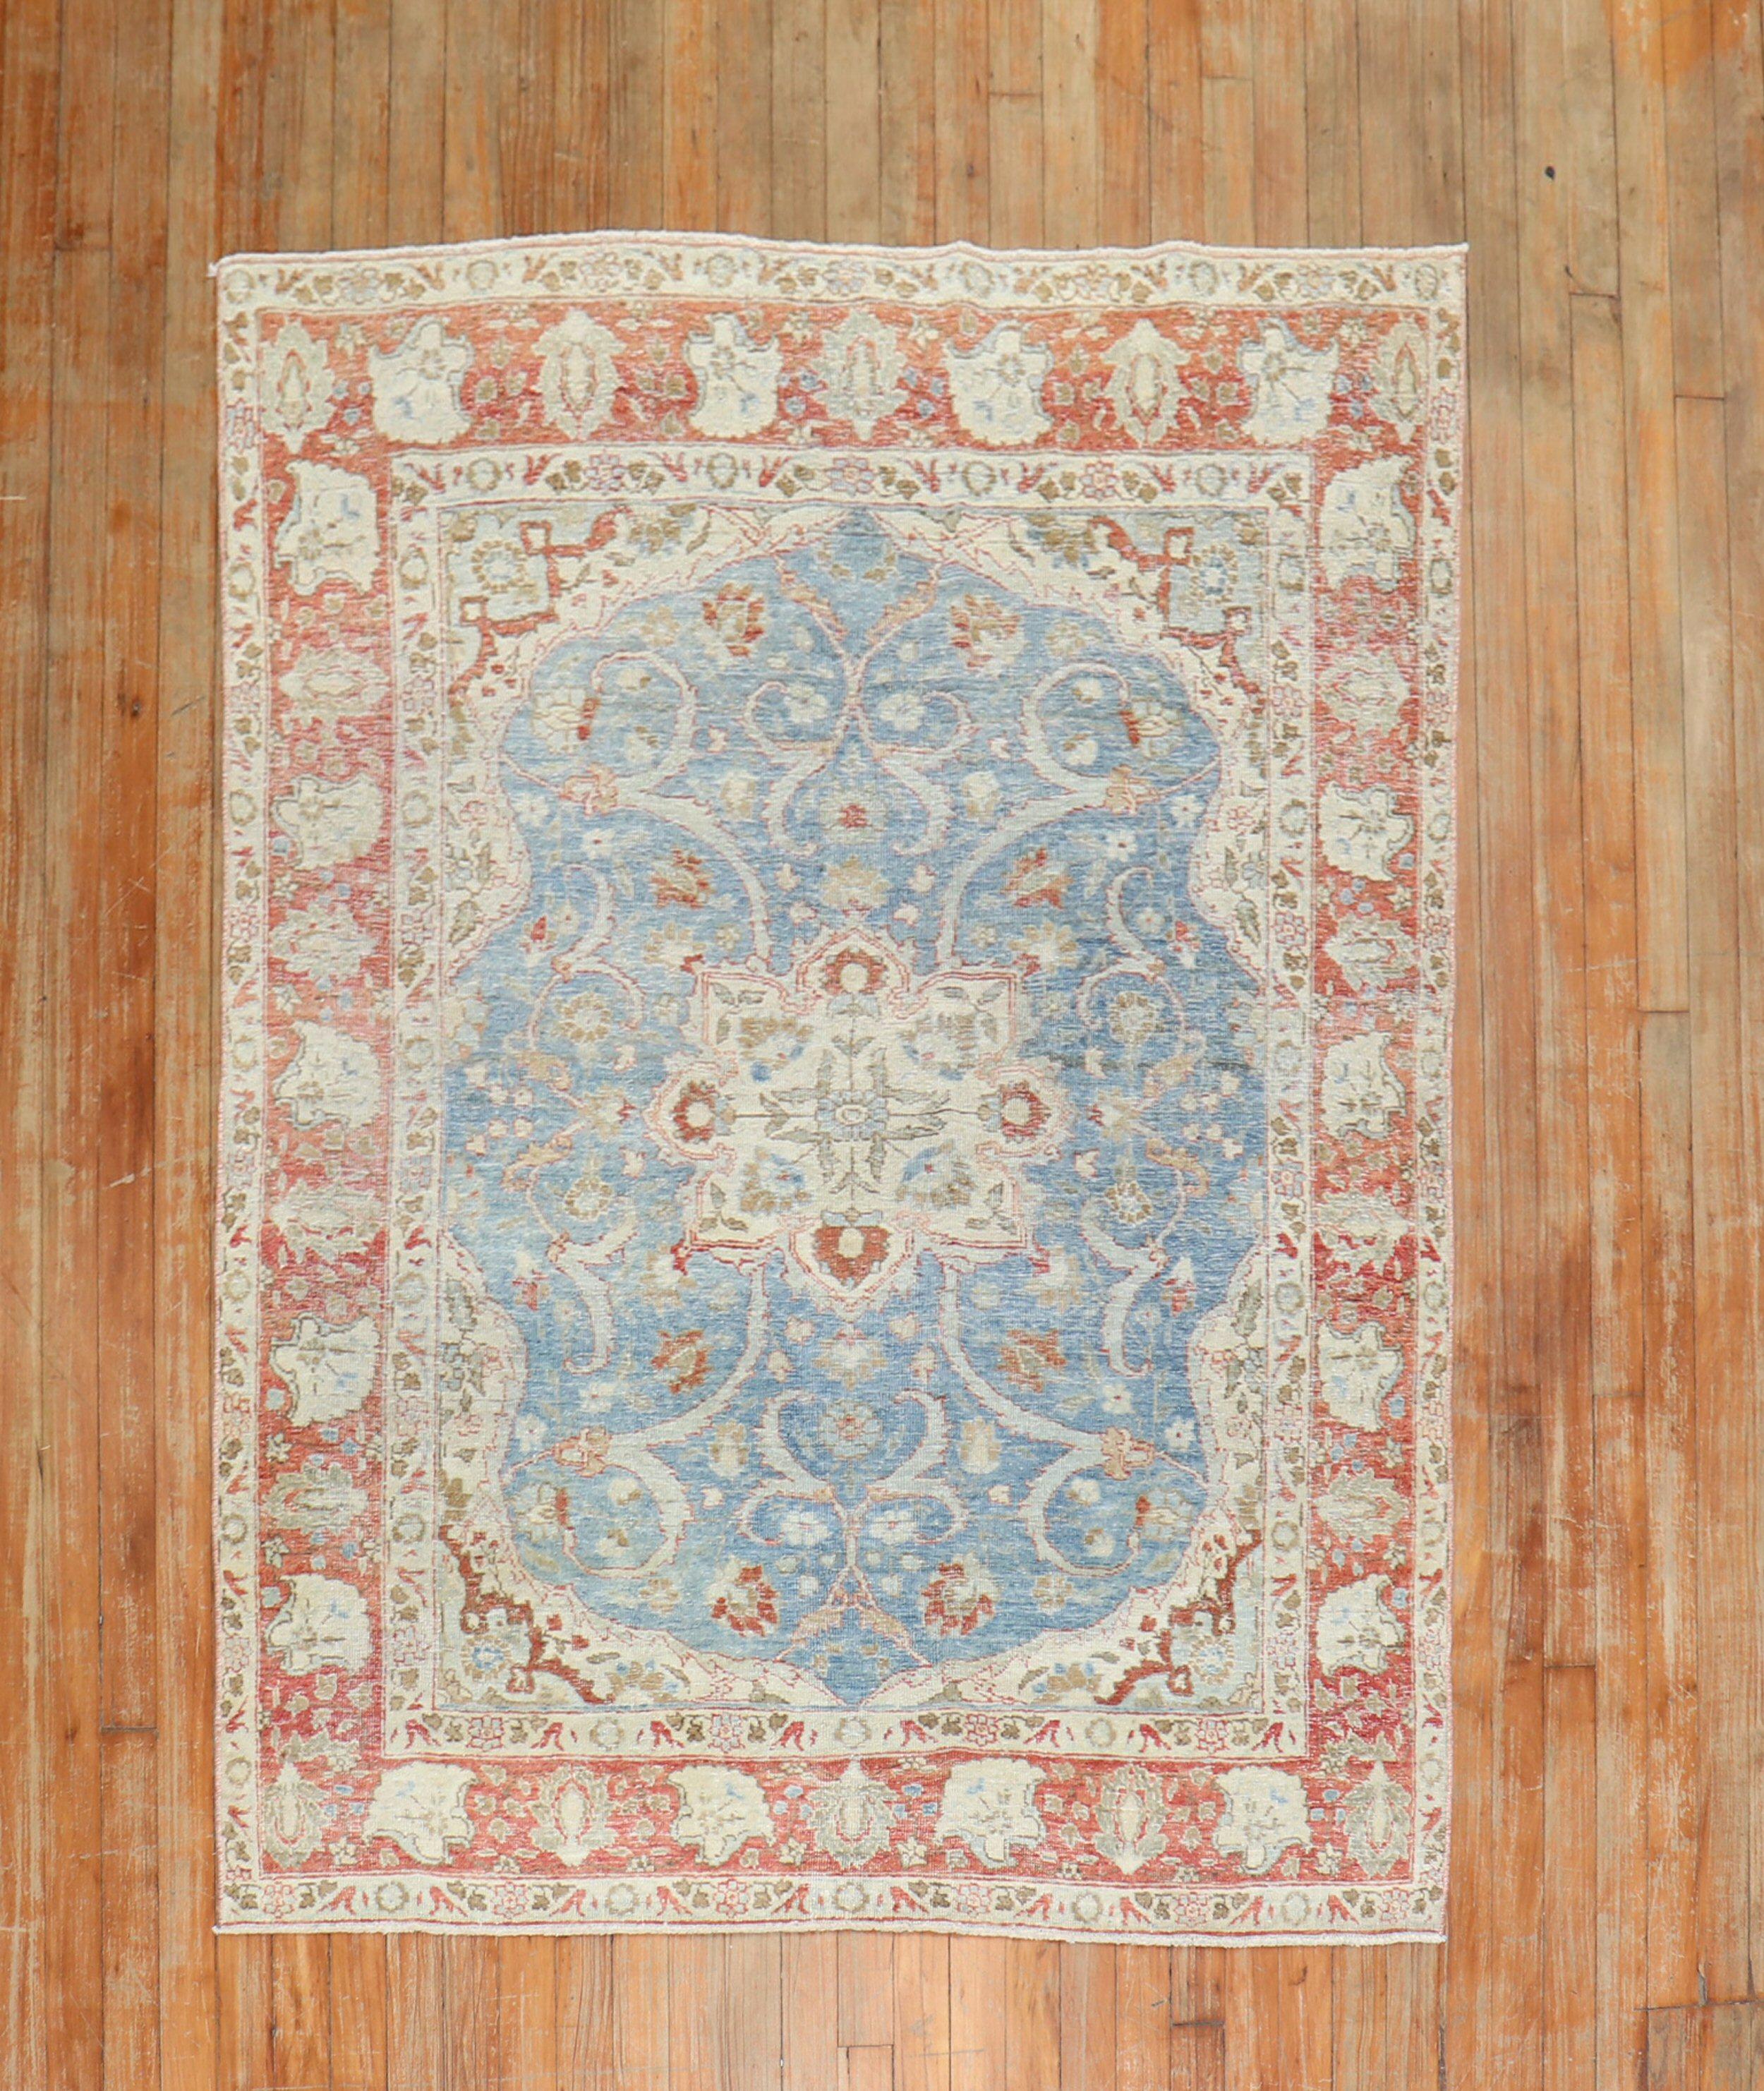 persischer Täbris-Teppich aus den 1930er Jahren in sanften Blautönen und zartem Rot

Maße: 4'6'' x 6'2''.

